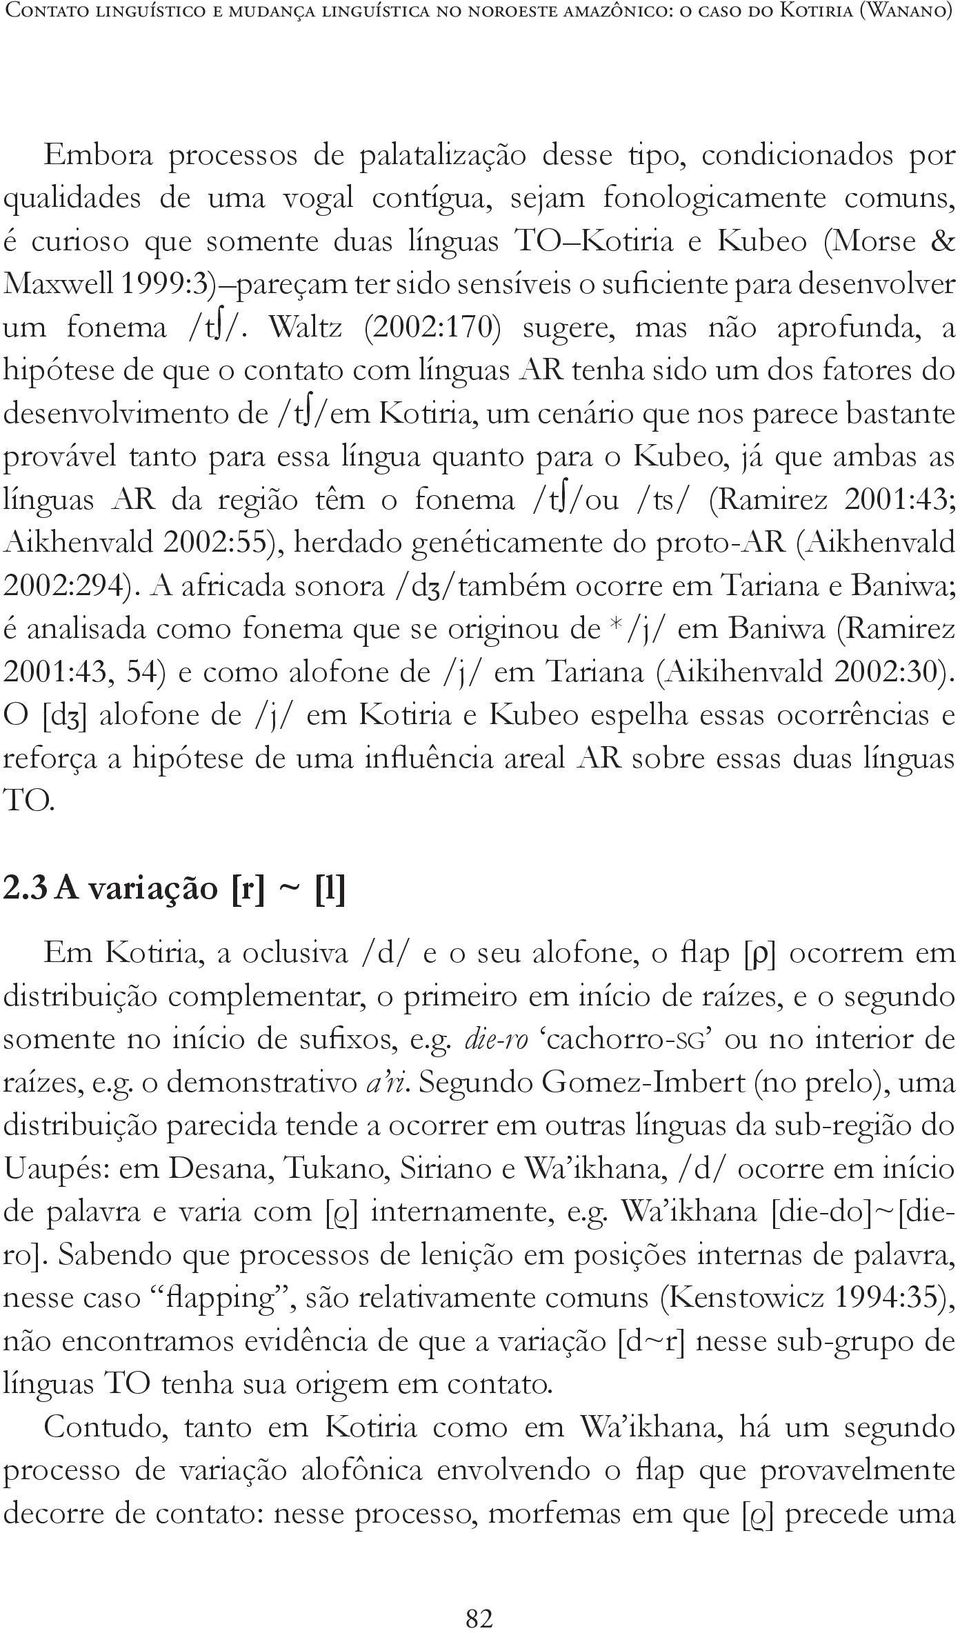 Waltz (2002:170) sugere, mas não aprofunda, a hipótese de que o contato com línguas AR tenha sido um dos fatores do desenvolvimento de /t /em Kotiria, um cenário que nos parece bastante provável